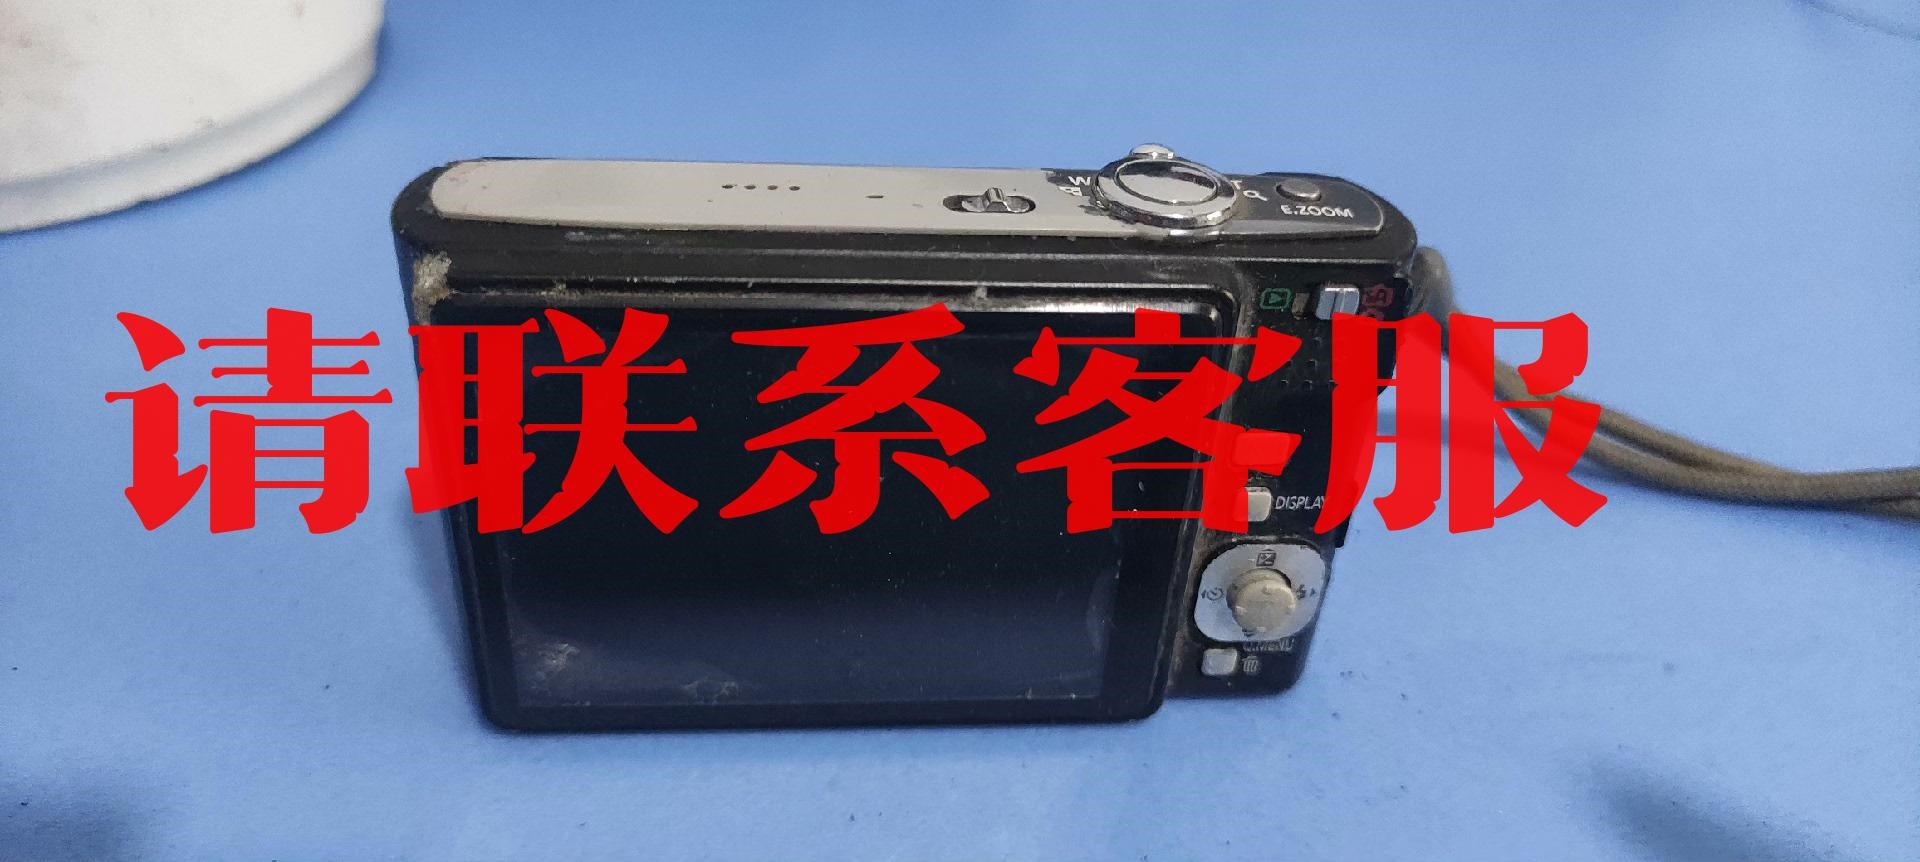 议价出售s原装DMC-FS20GK数码相机 实物如图 成色垃圾 当配